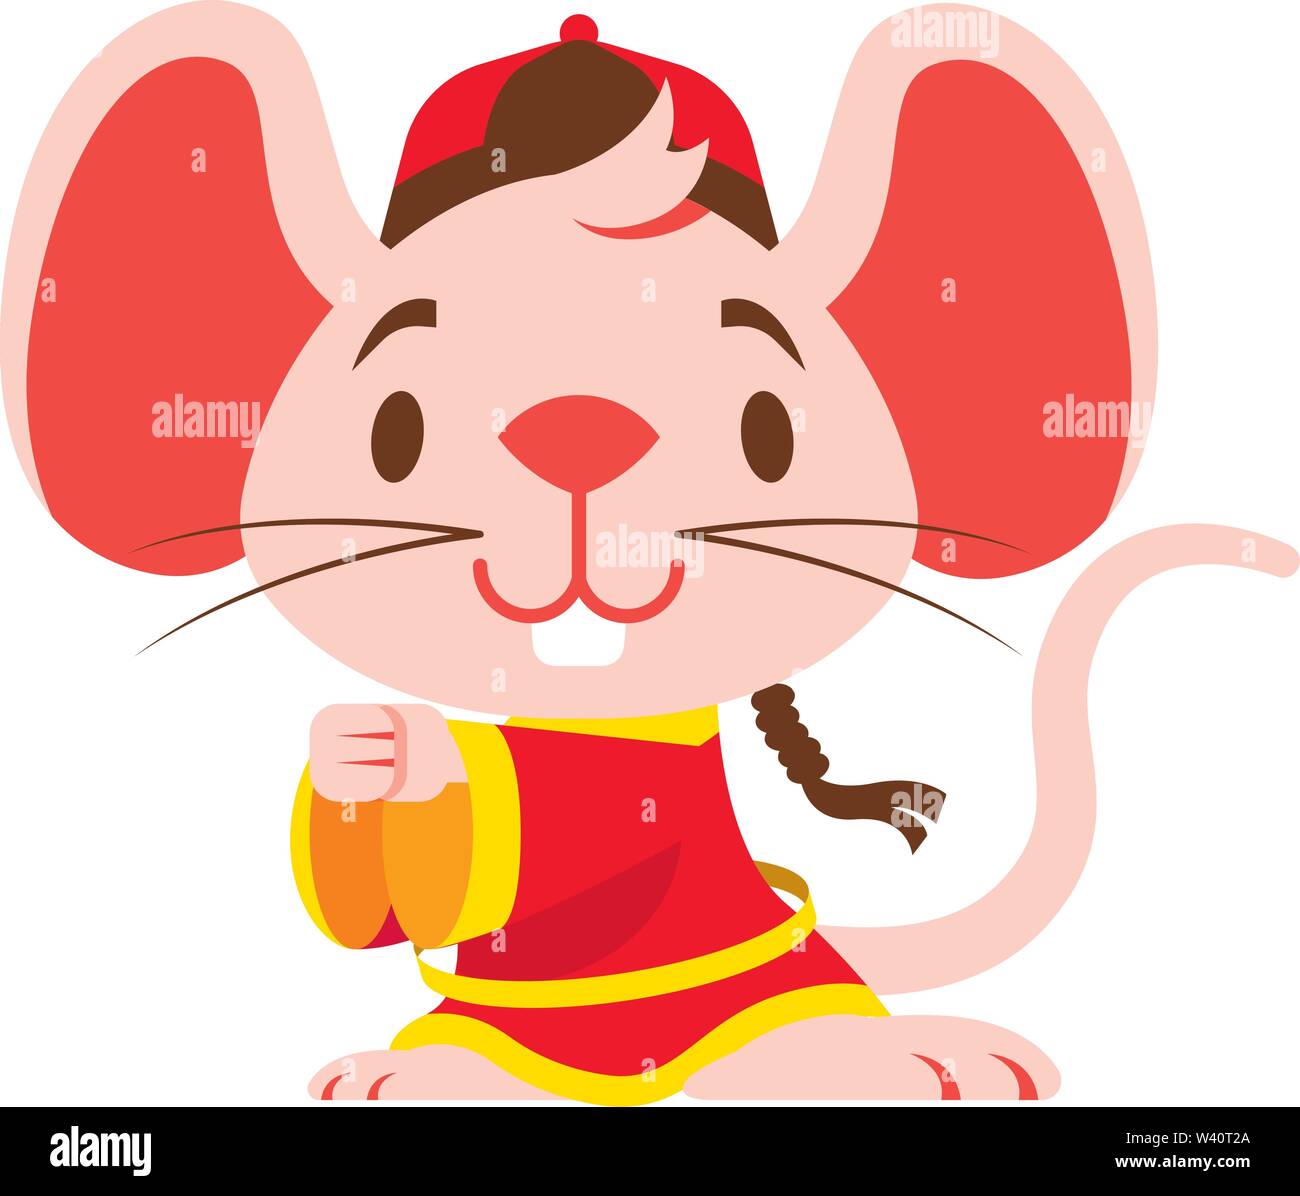 Süße pinky Maus mit großen Ohren trägt traditionelle chinesische Tangzhuang kostüm Gruß Gong Xi Fa Cai. Chinesisches Neues Jahr 2020 das Jahr der Ratte/Mäuse/m Stock Vektor